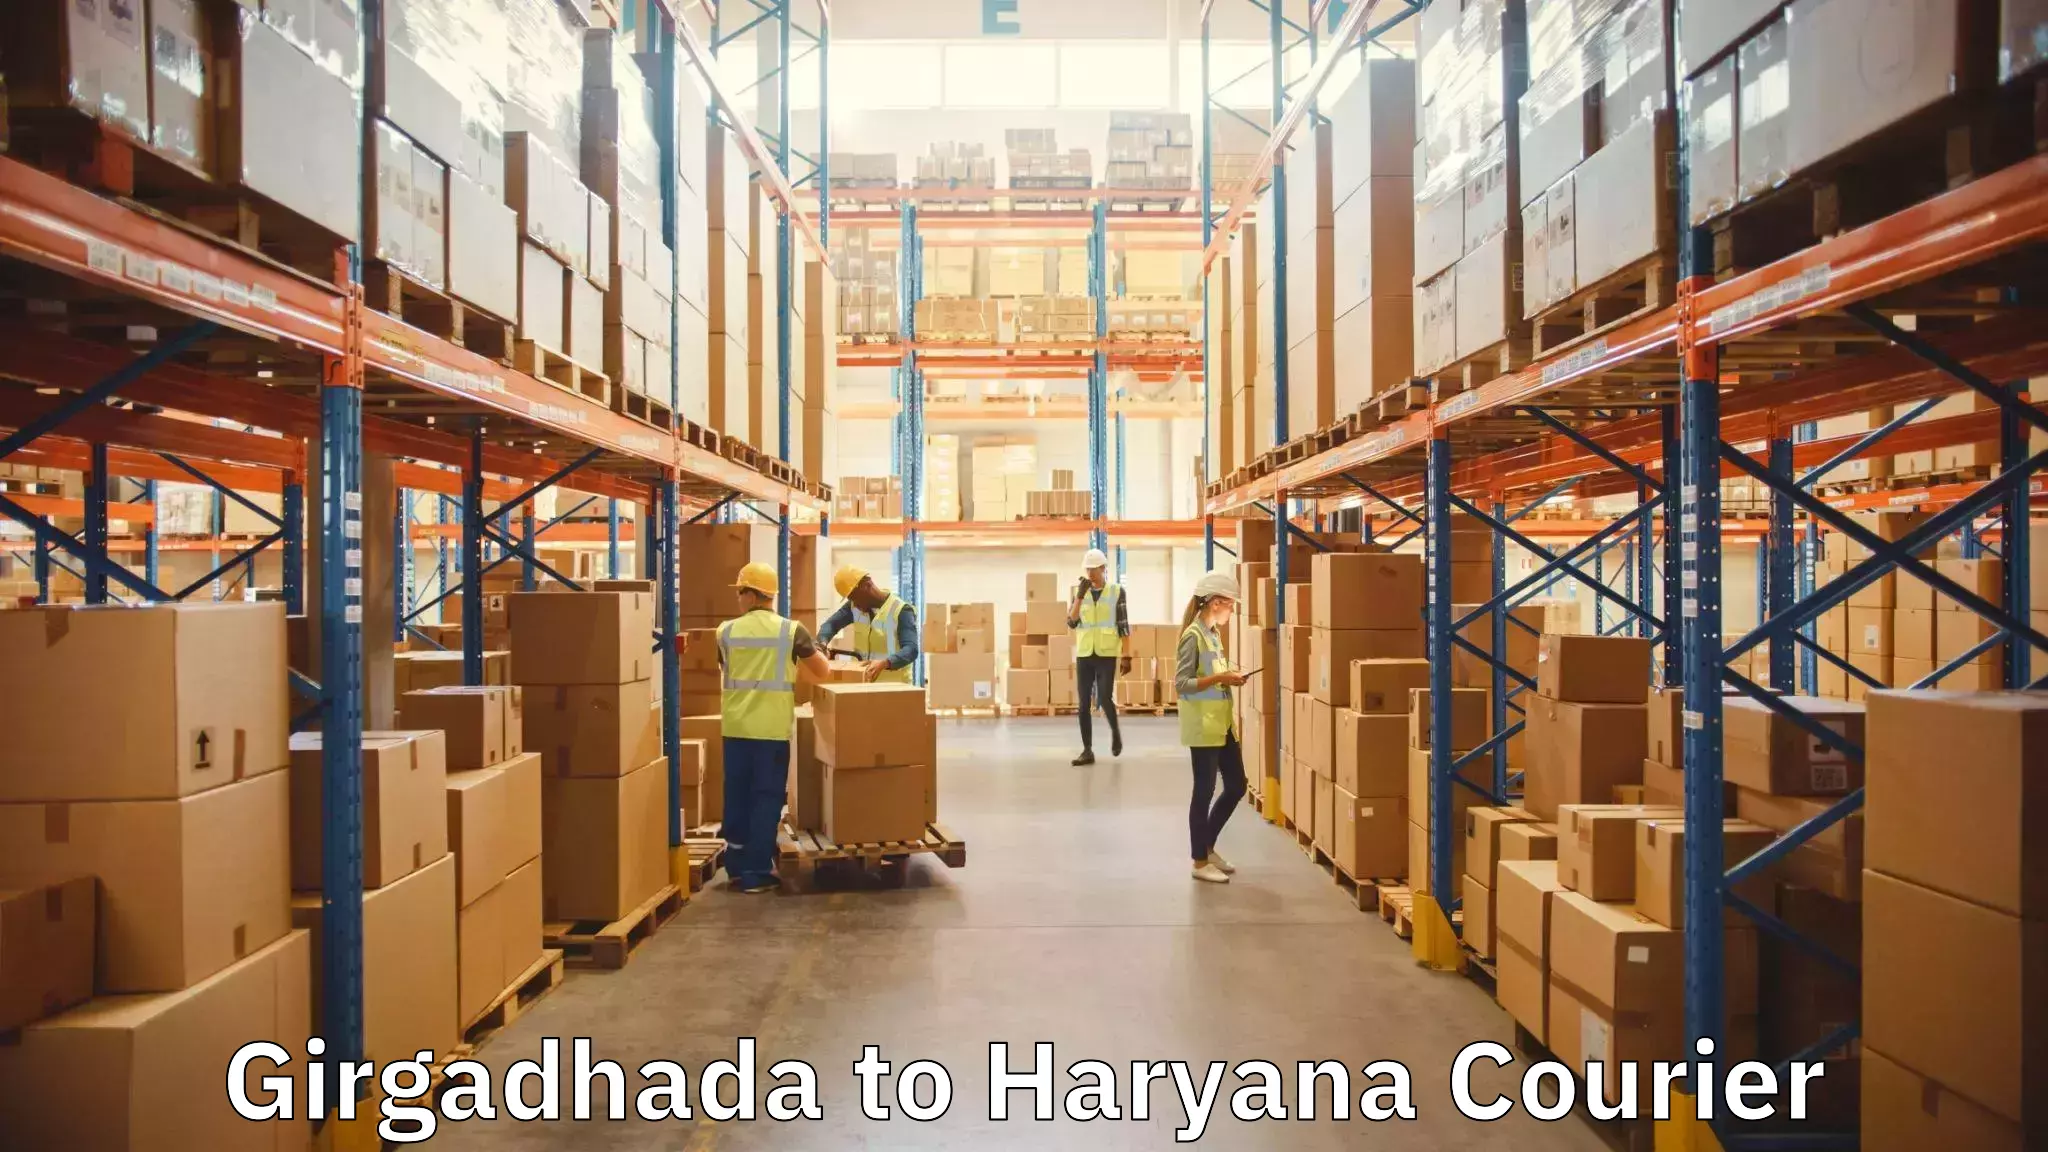 Local furniture movers Girgadhada to Haryana